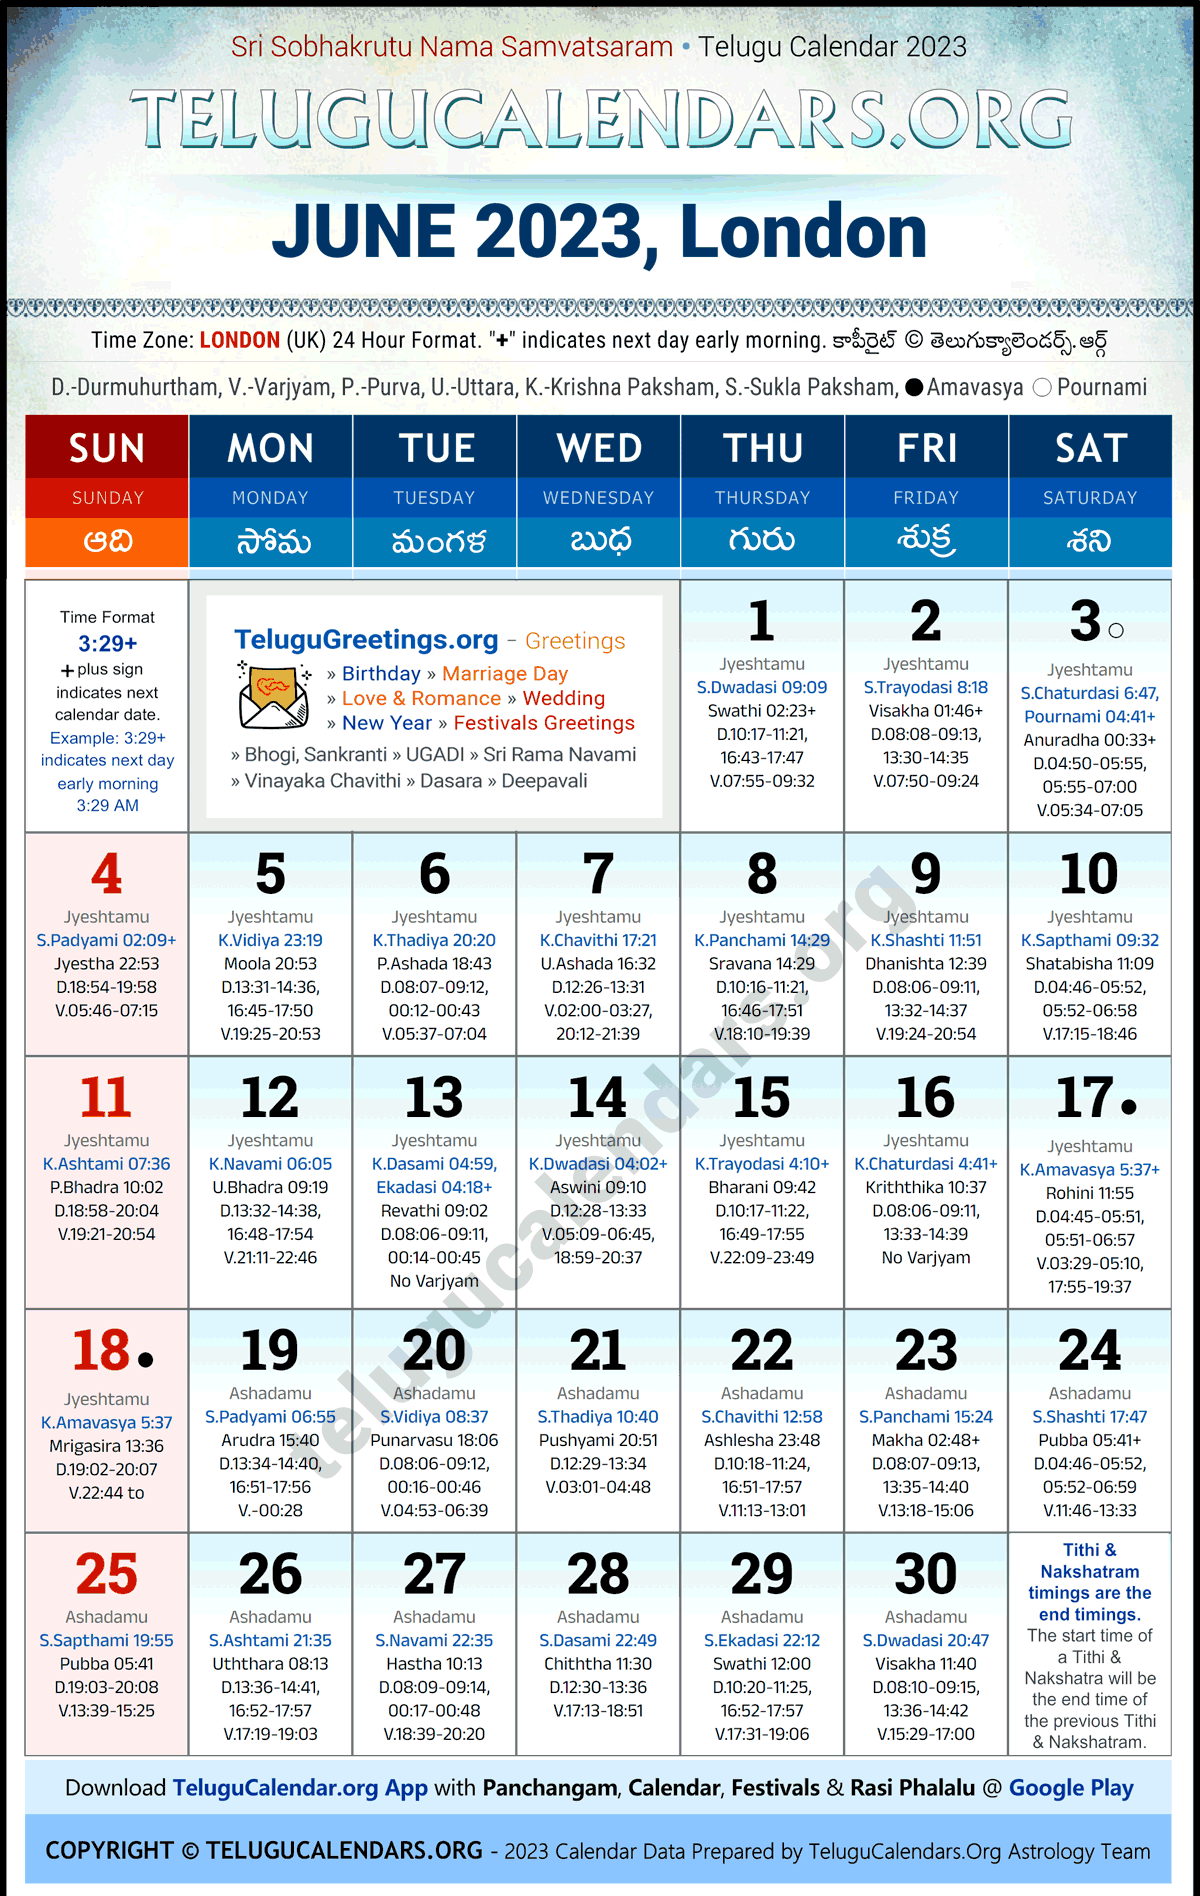 Telugu Calendar 2023 June Festivals for London